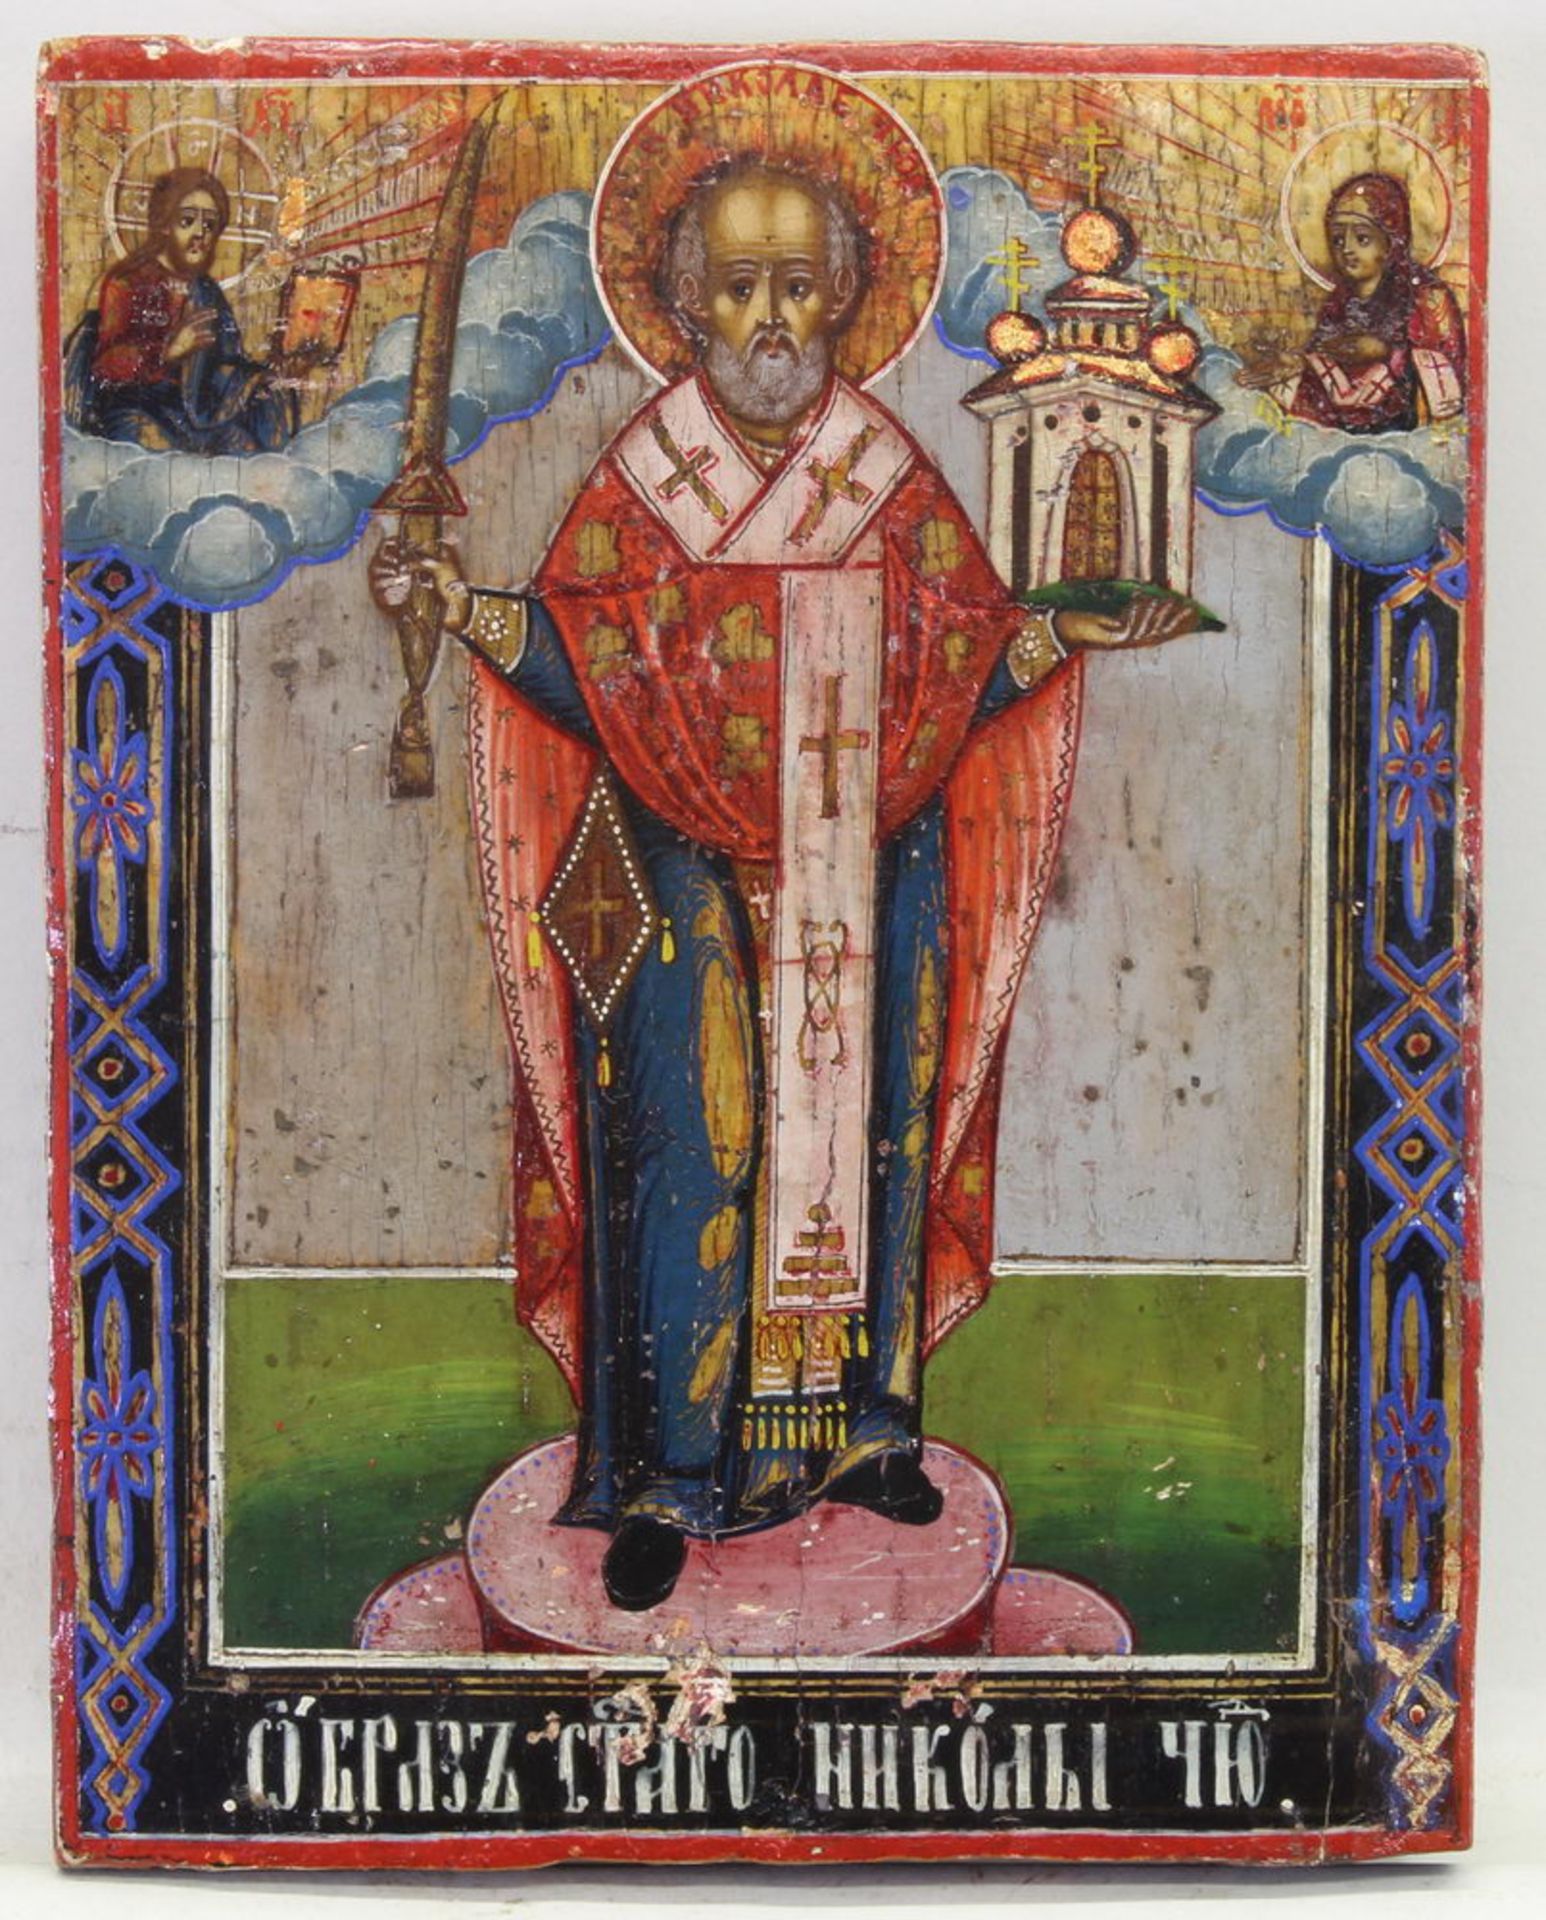 Ikone, Tempera auf Holz, "Hl. Nikolaus von Mochajsk", wohl Russland 18./19. Jh., 18 x 14 cm, alter